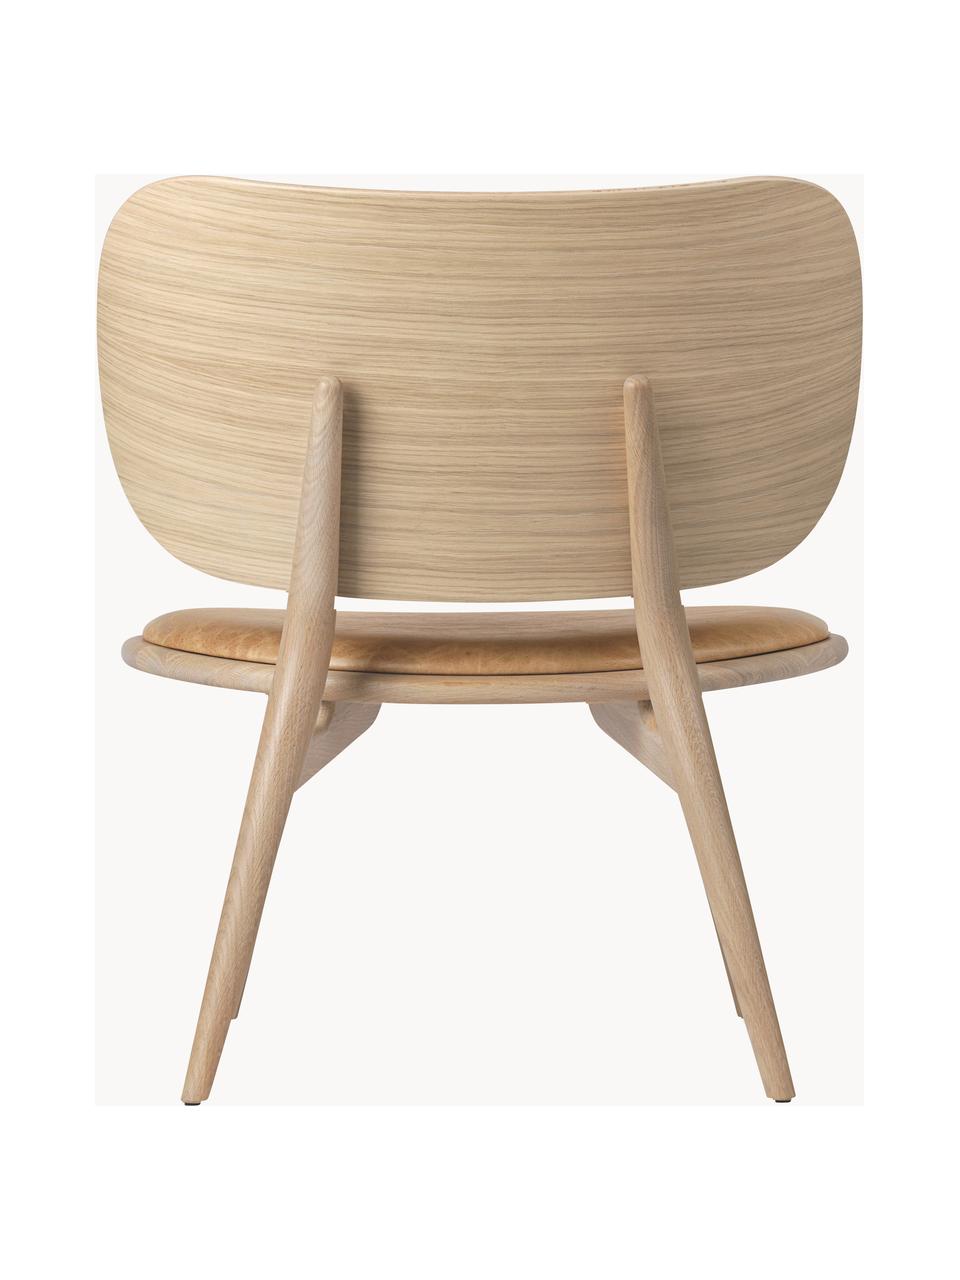 Fauteuil en bois avec assise en cuir Rocker, Cuir beige, bois de chêne clair, larg. 65 x prof. 69 cm